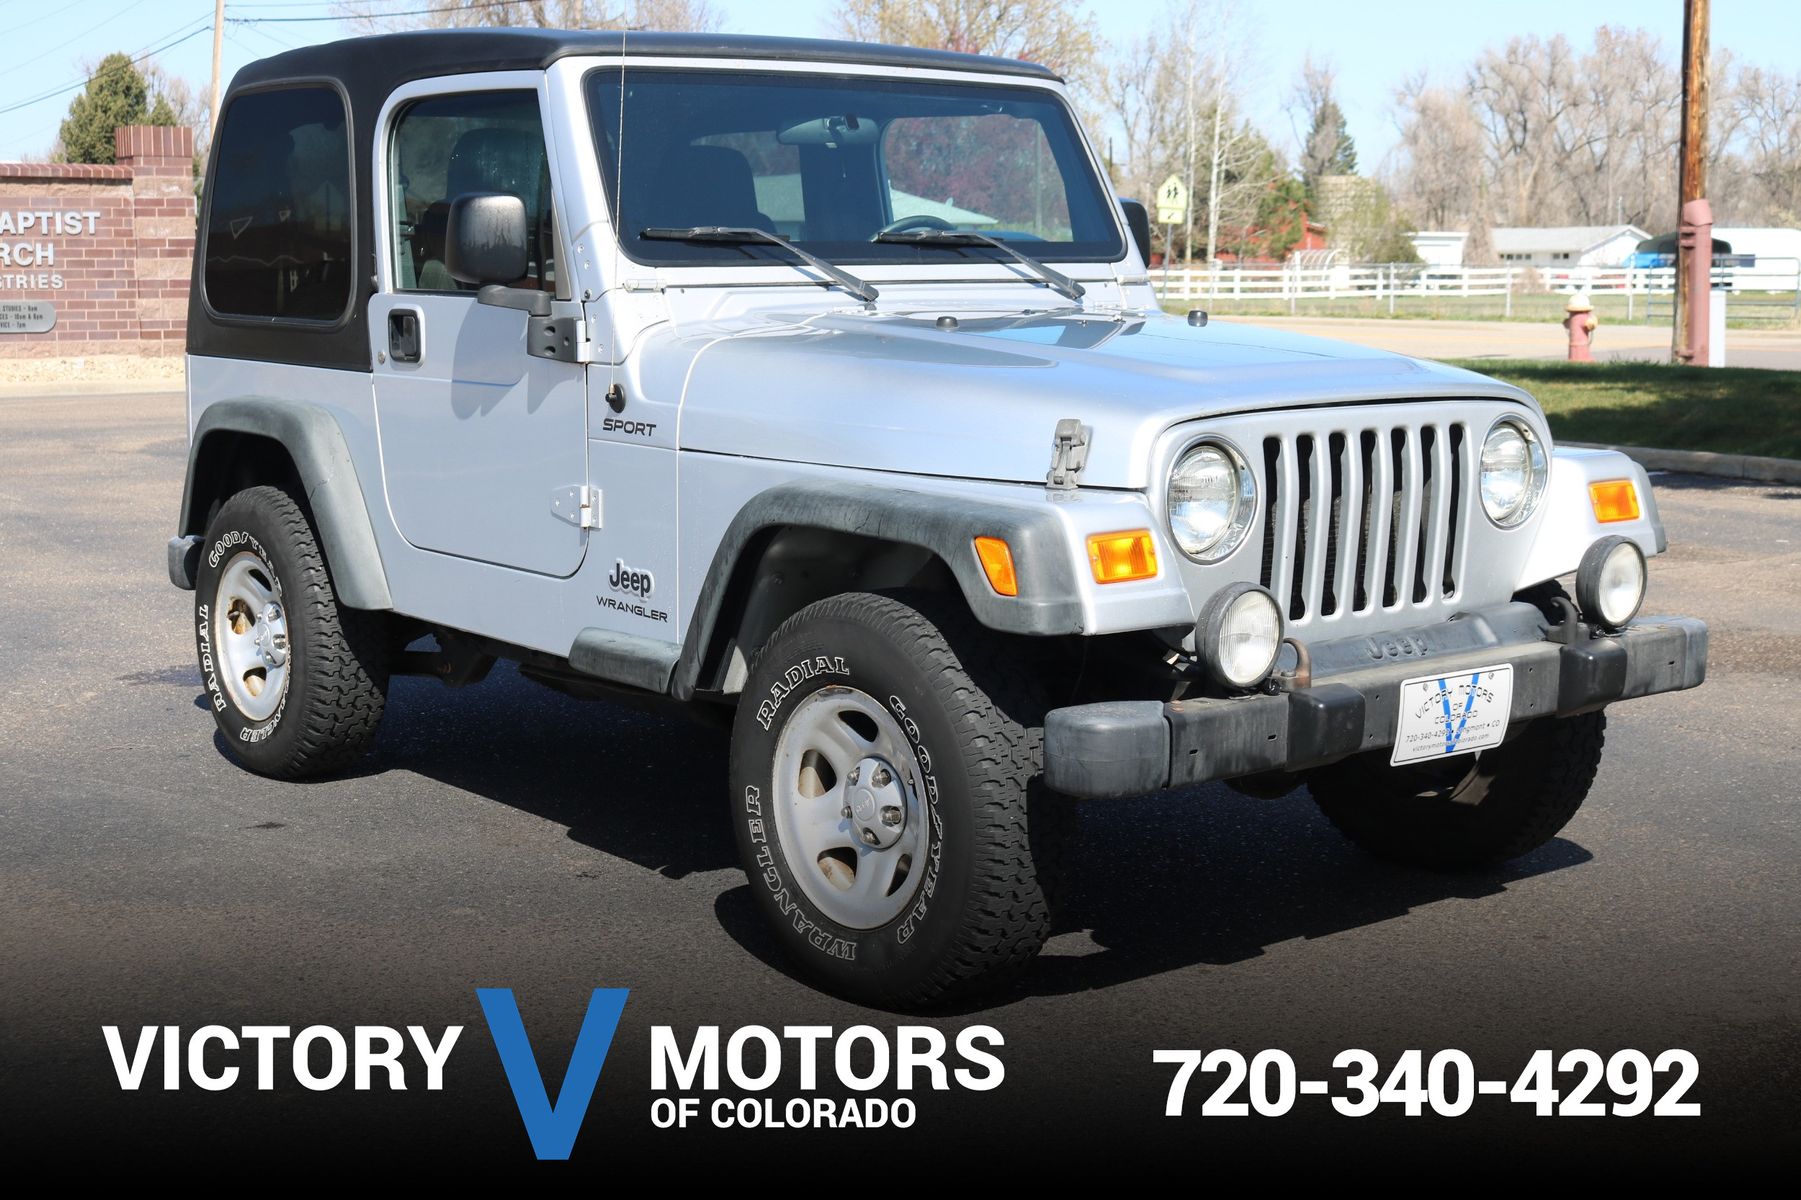 2005 Jeep Wrangler Sport | Victory Motors of Colorado